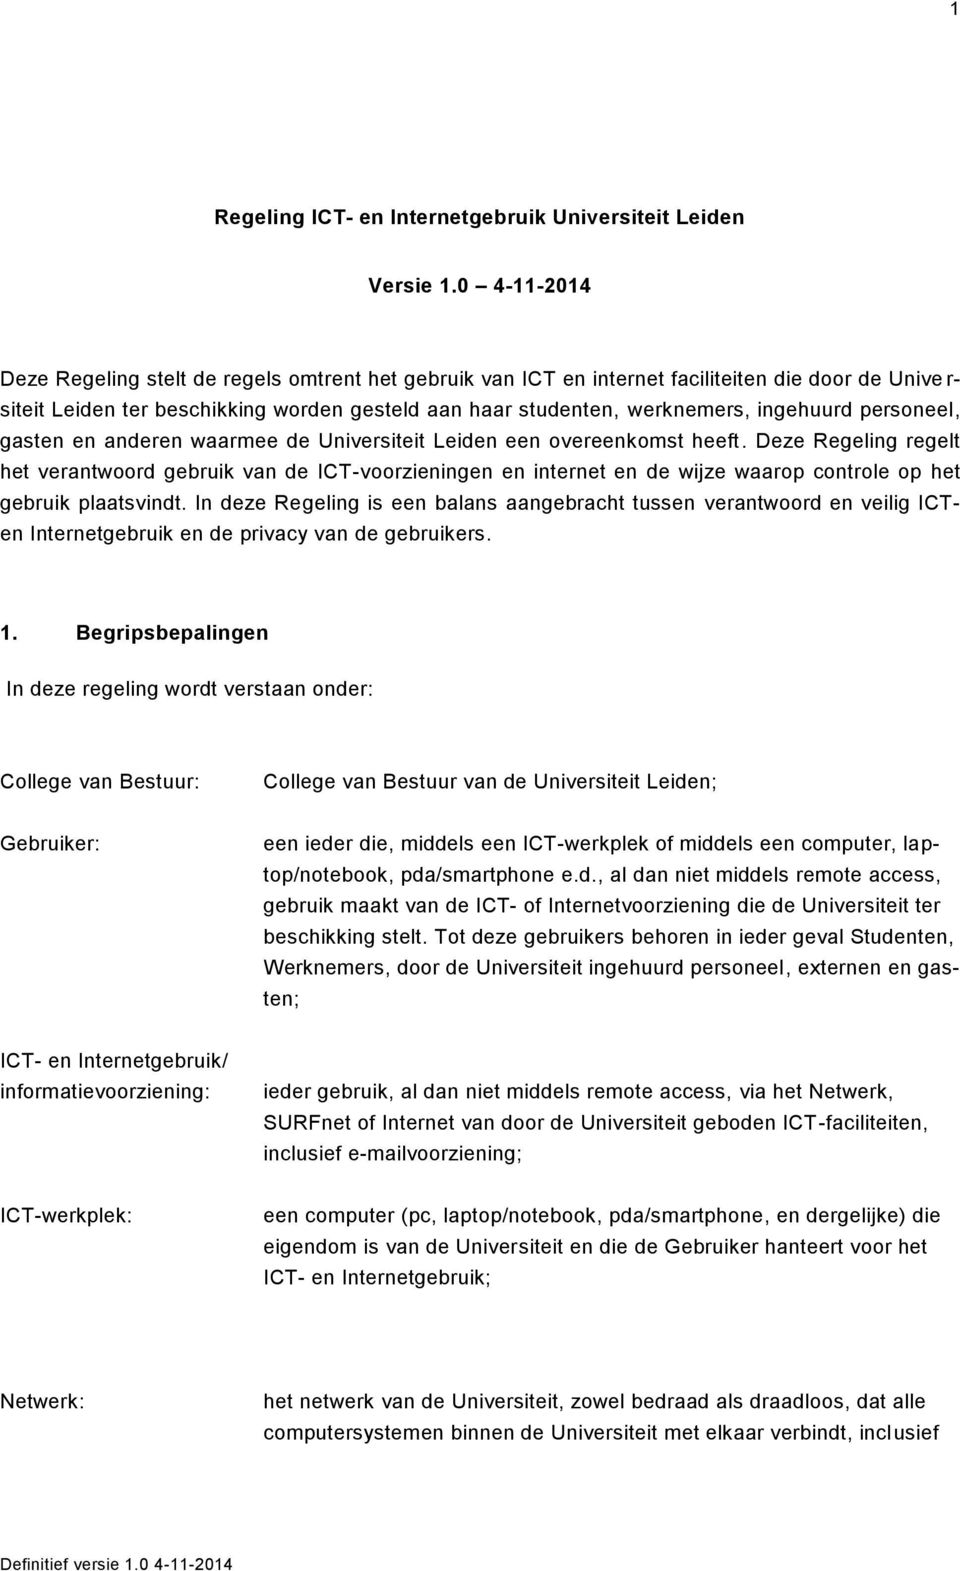 ingehuurd personeel, gasten en anderen waarmee de Universiteit Leiden een overeenkomst heeft.